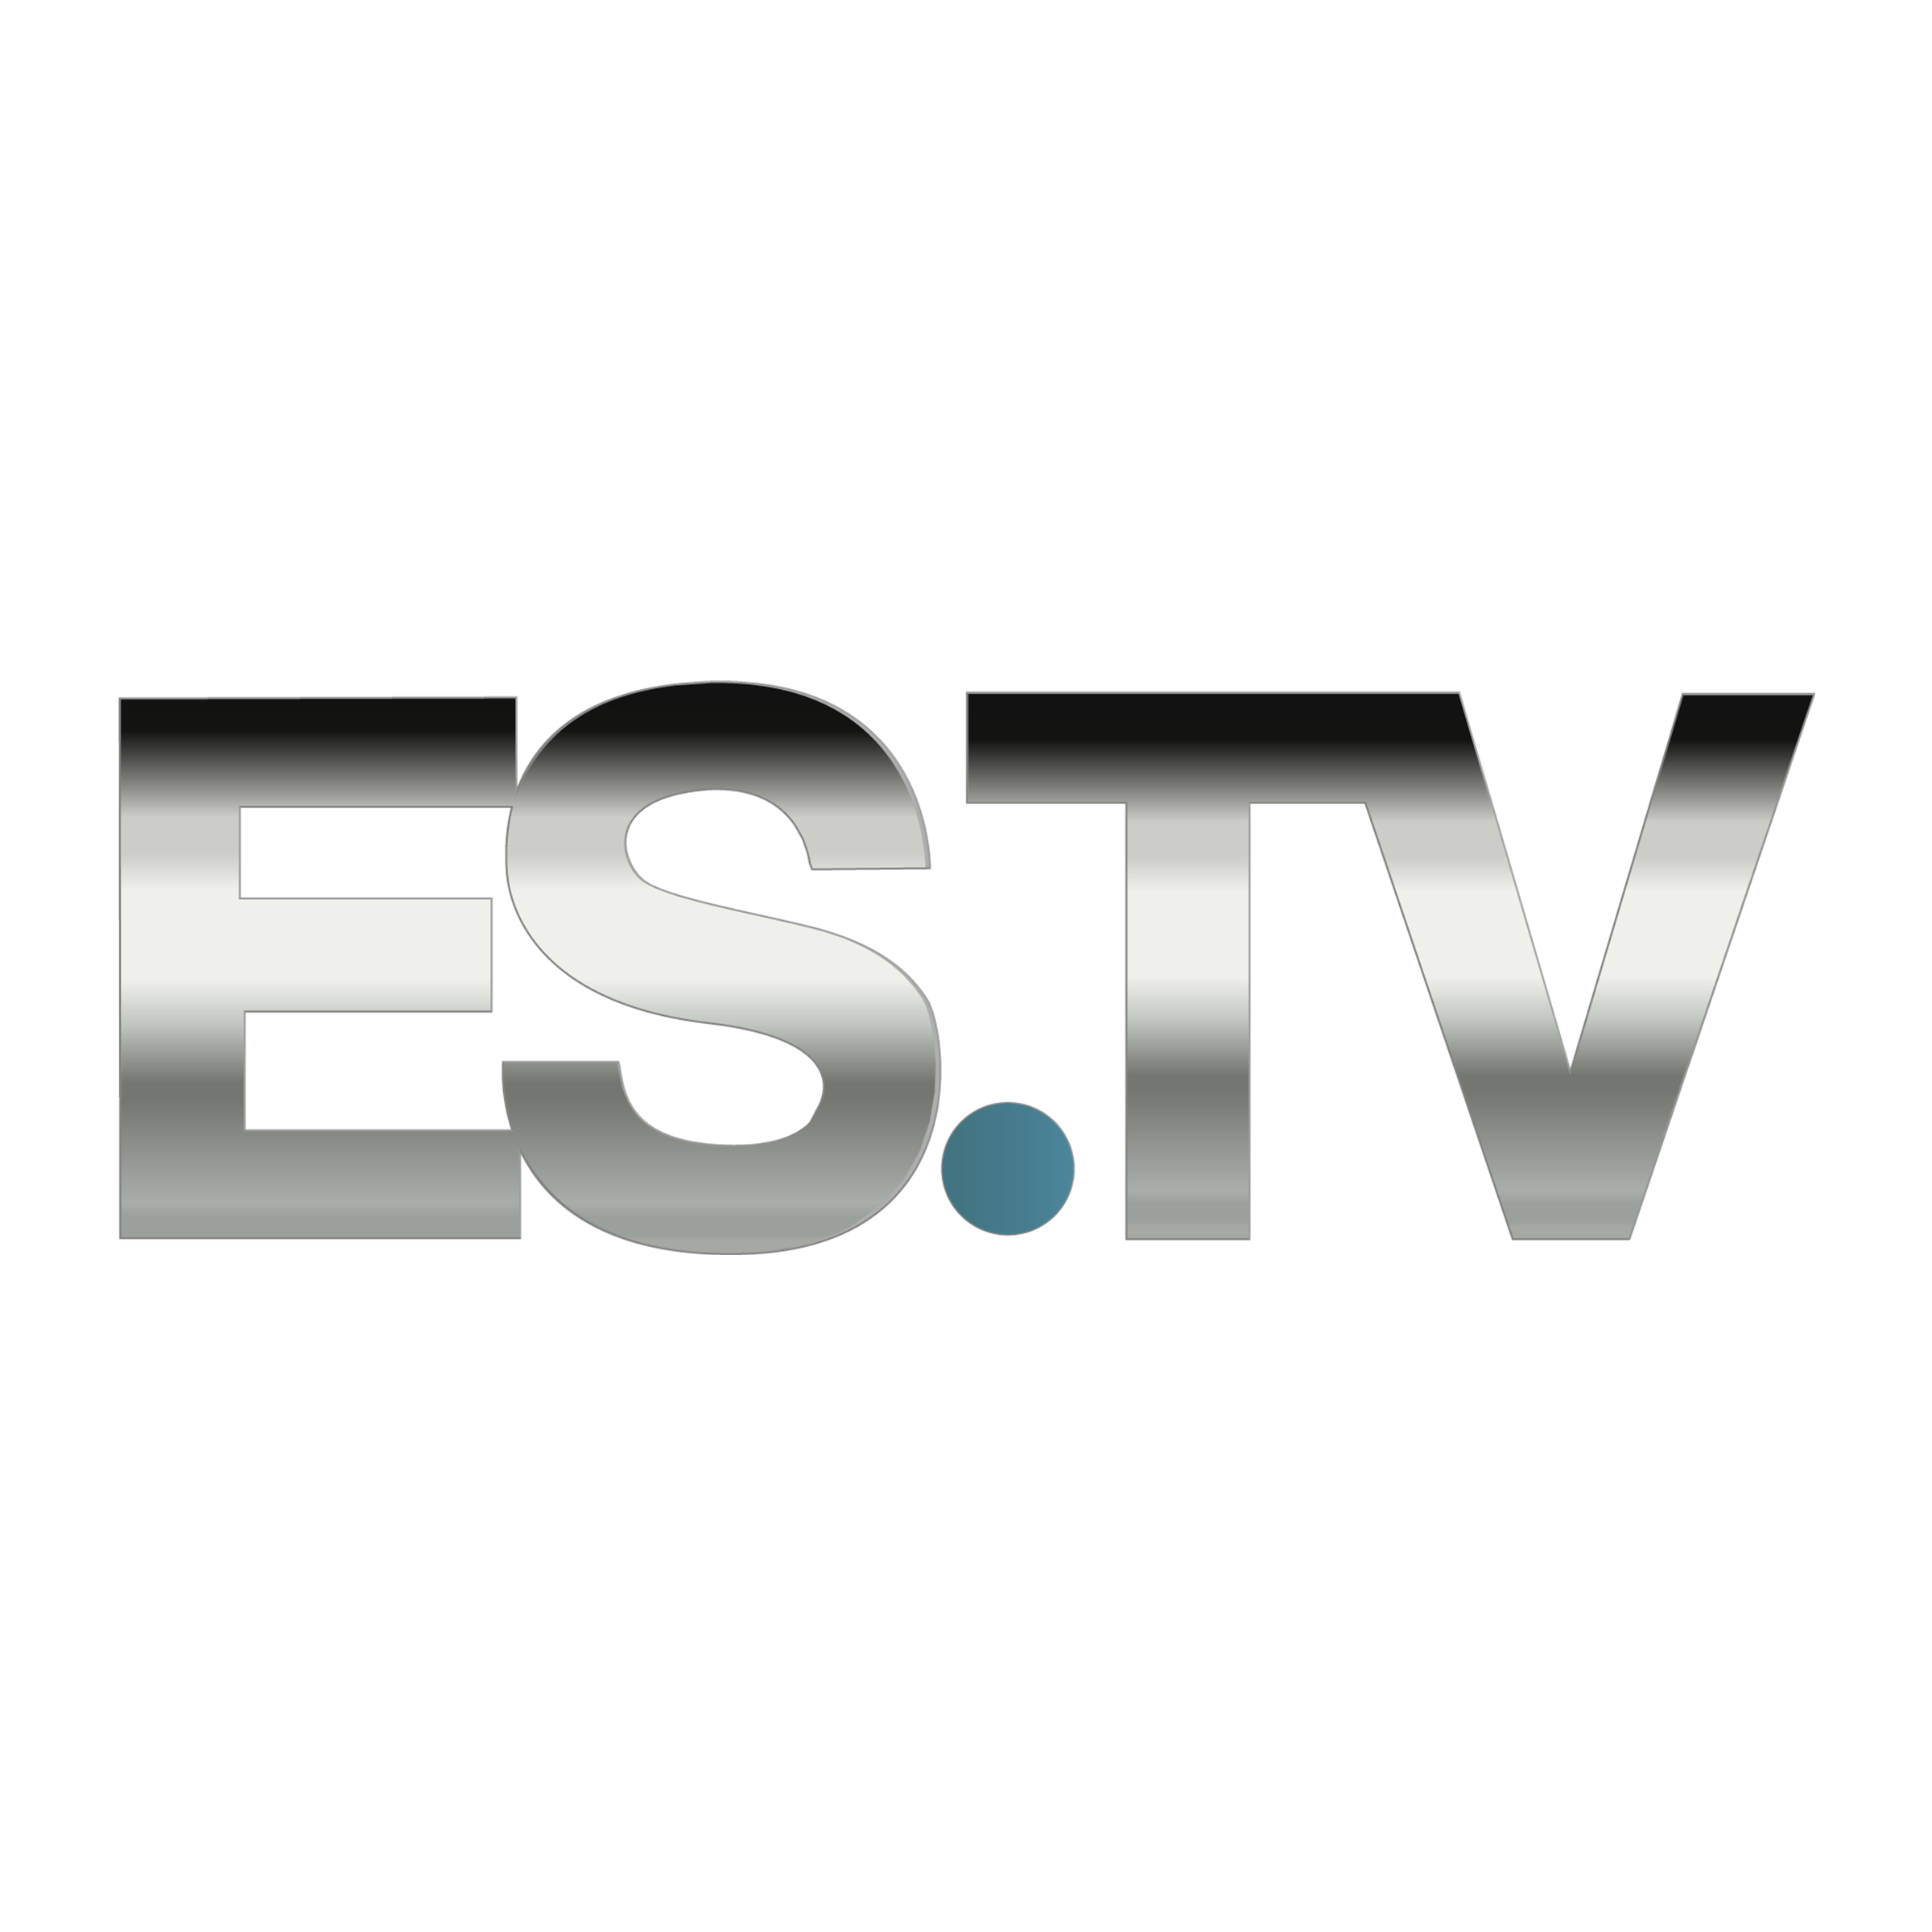 ES.TV Logo